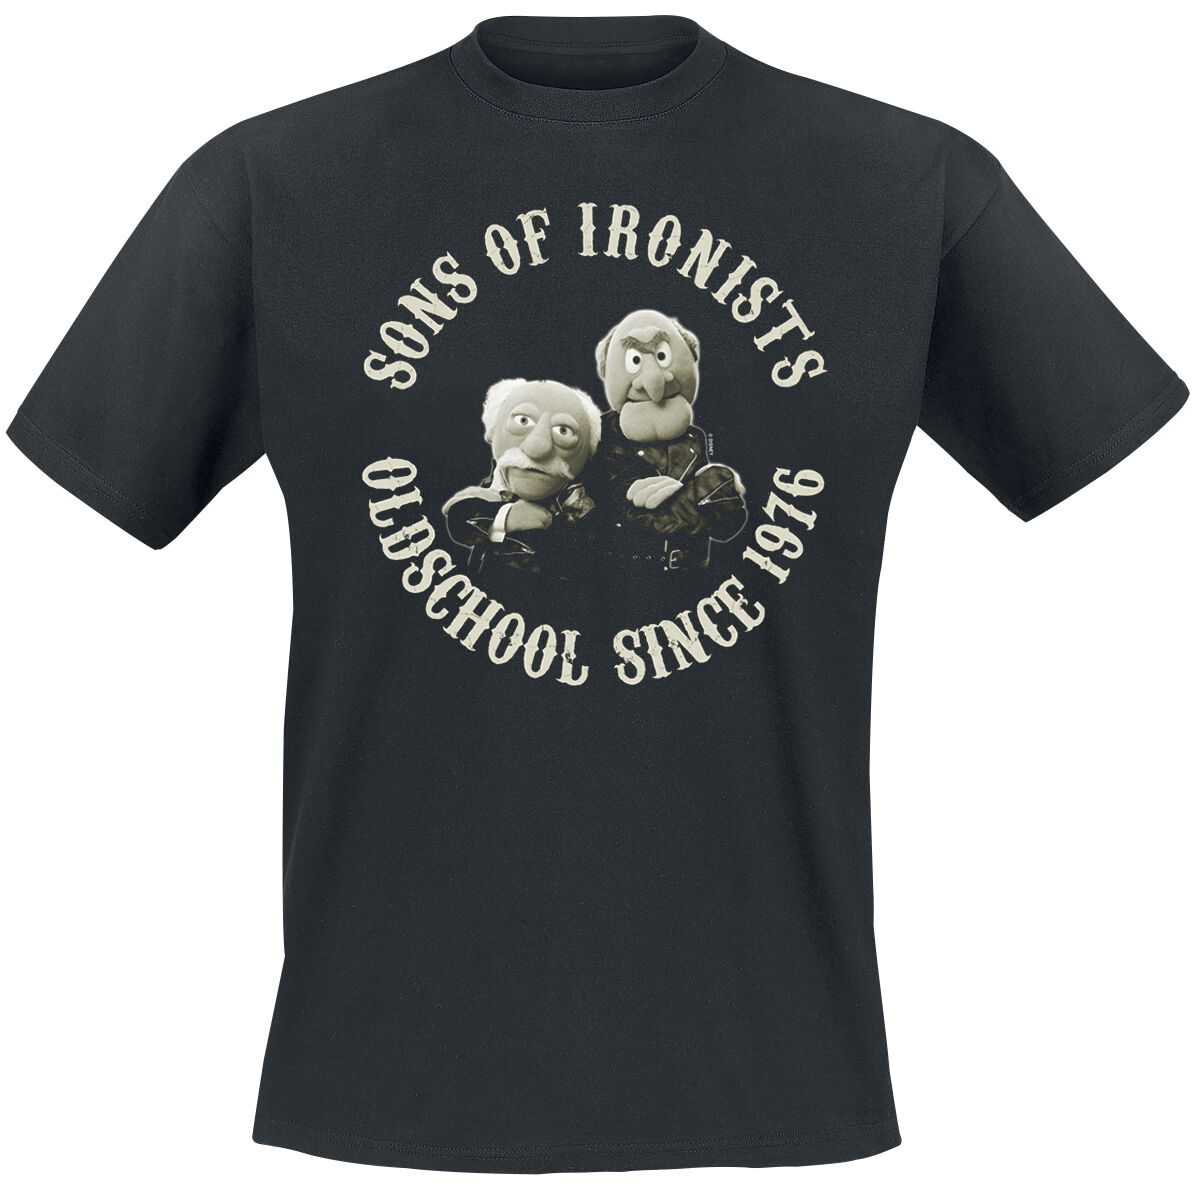 Die Muppets T-Shirt - Sons Of Ironists - M bis 5XL - für Männer - Größe 5XL - schwarz  - Lizenzierter Fanartikel